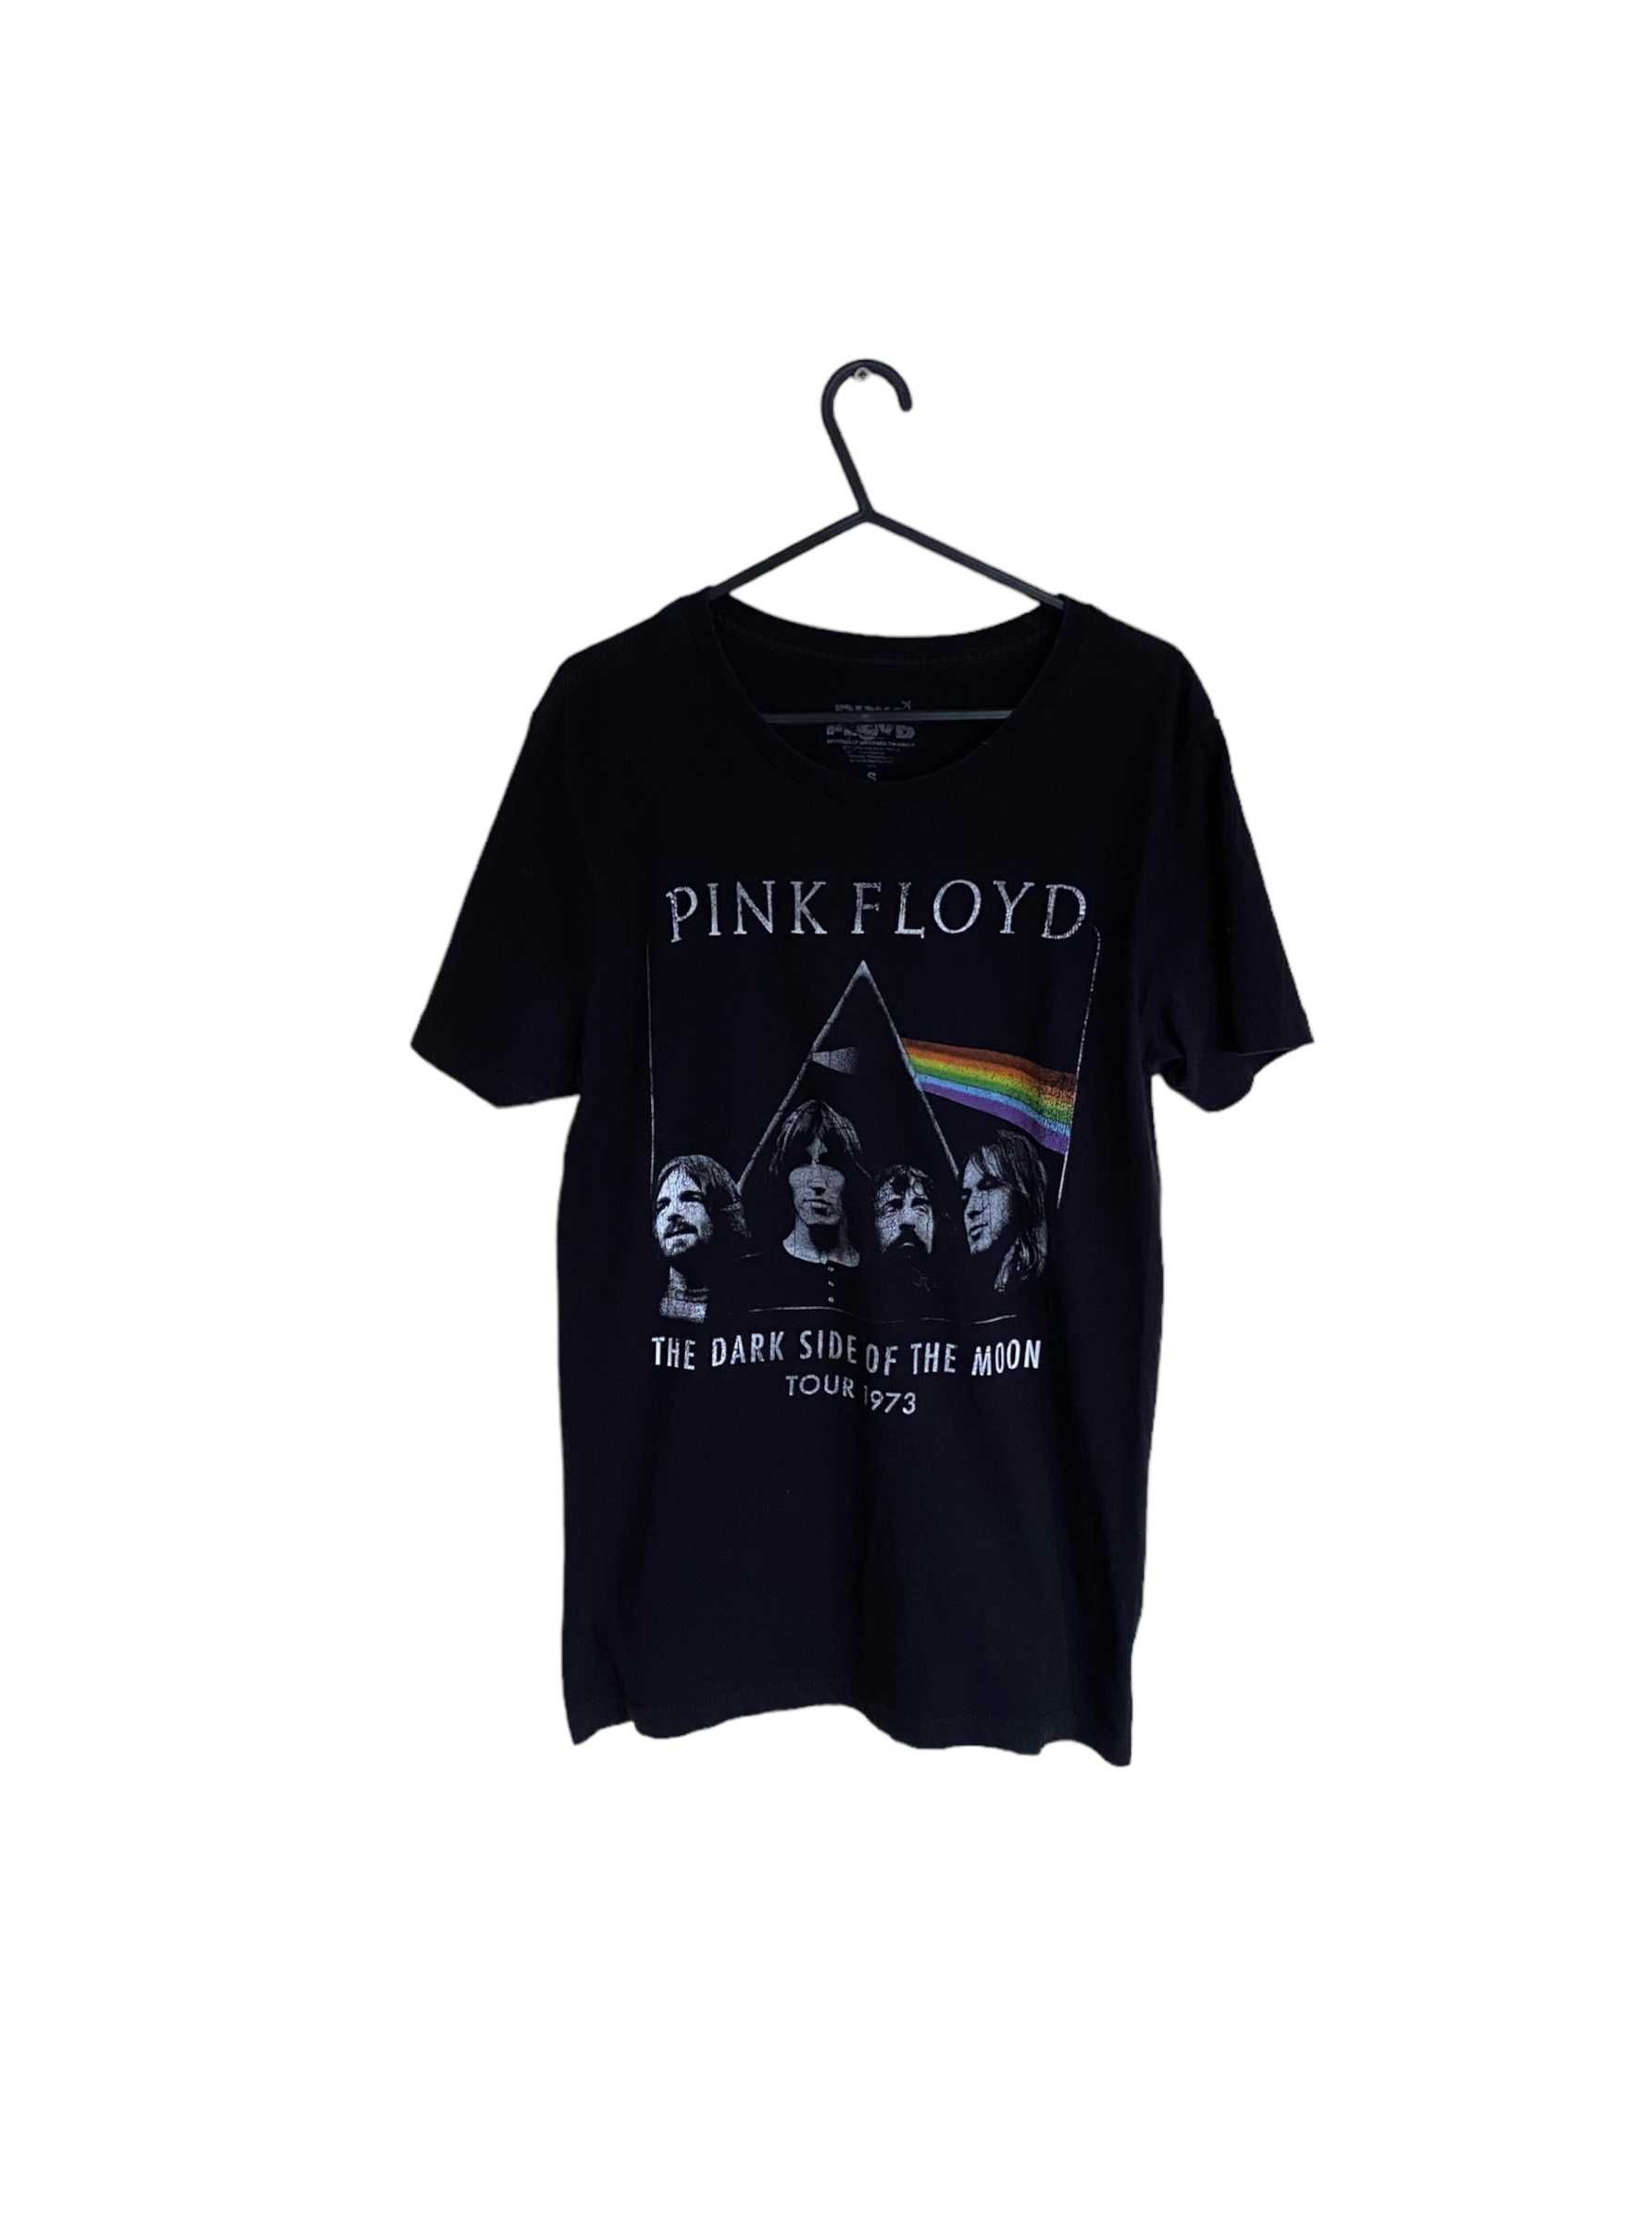 Pink Floyd t-shirt, rozmiar S, stan bardzo dobry